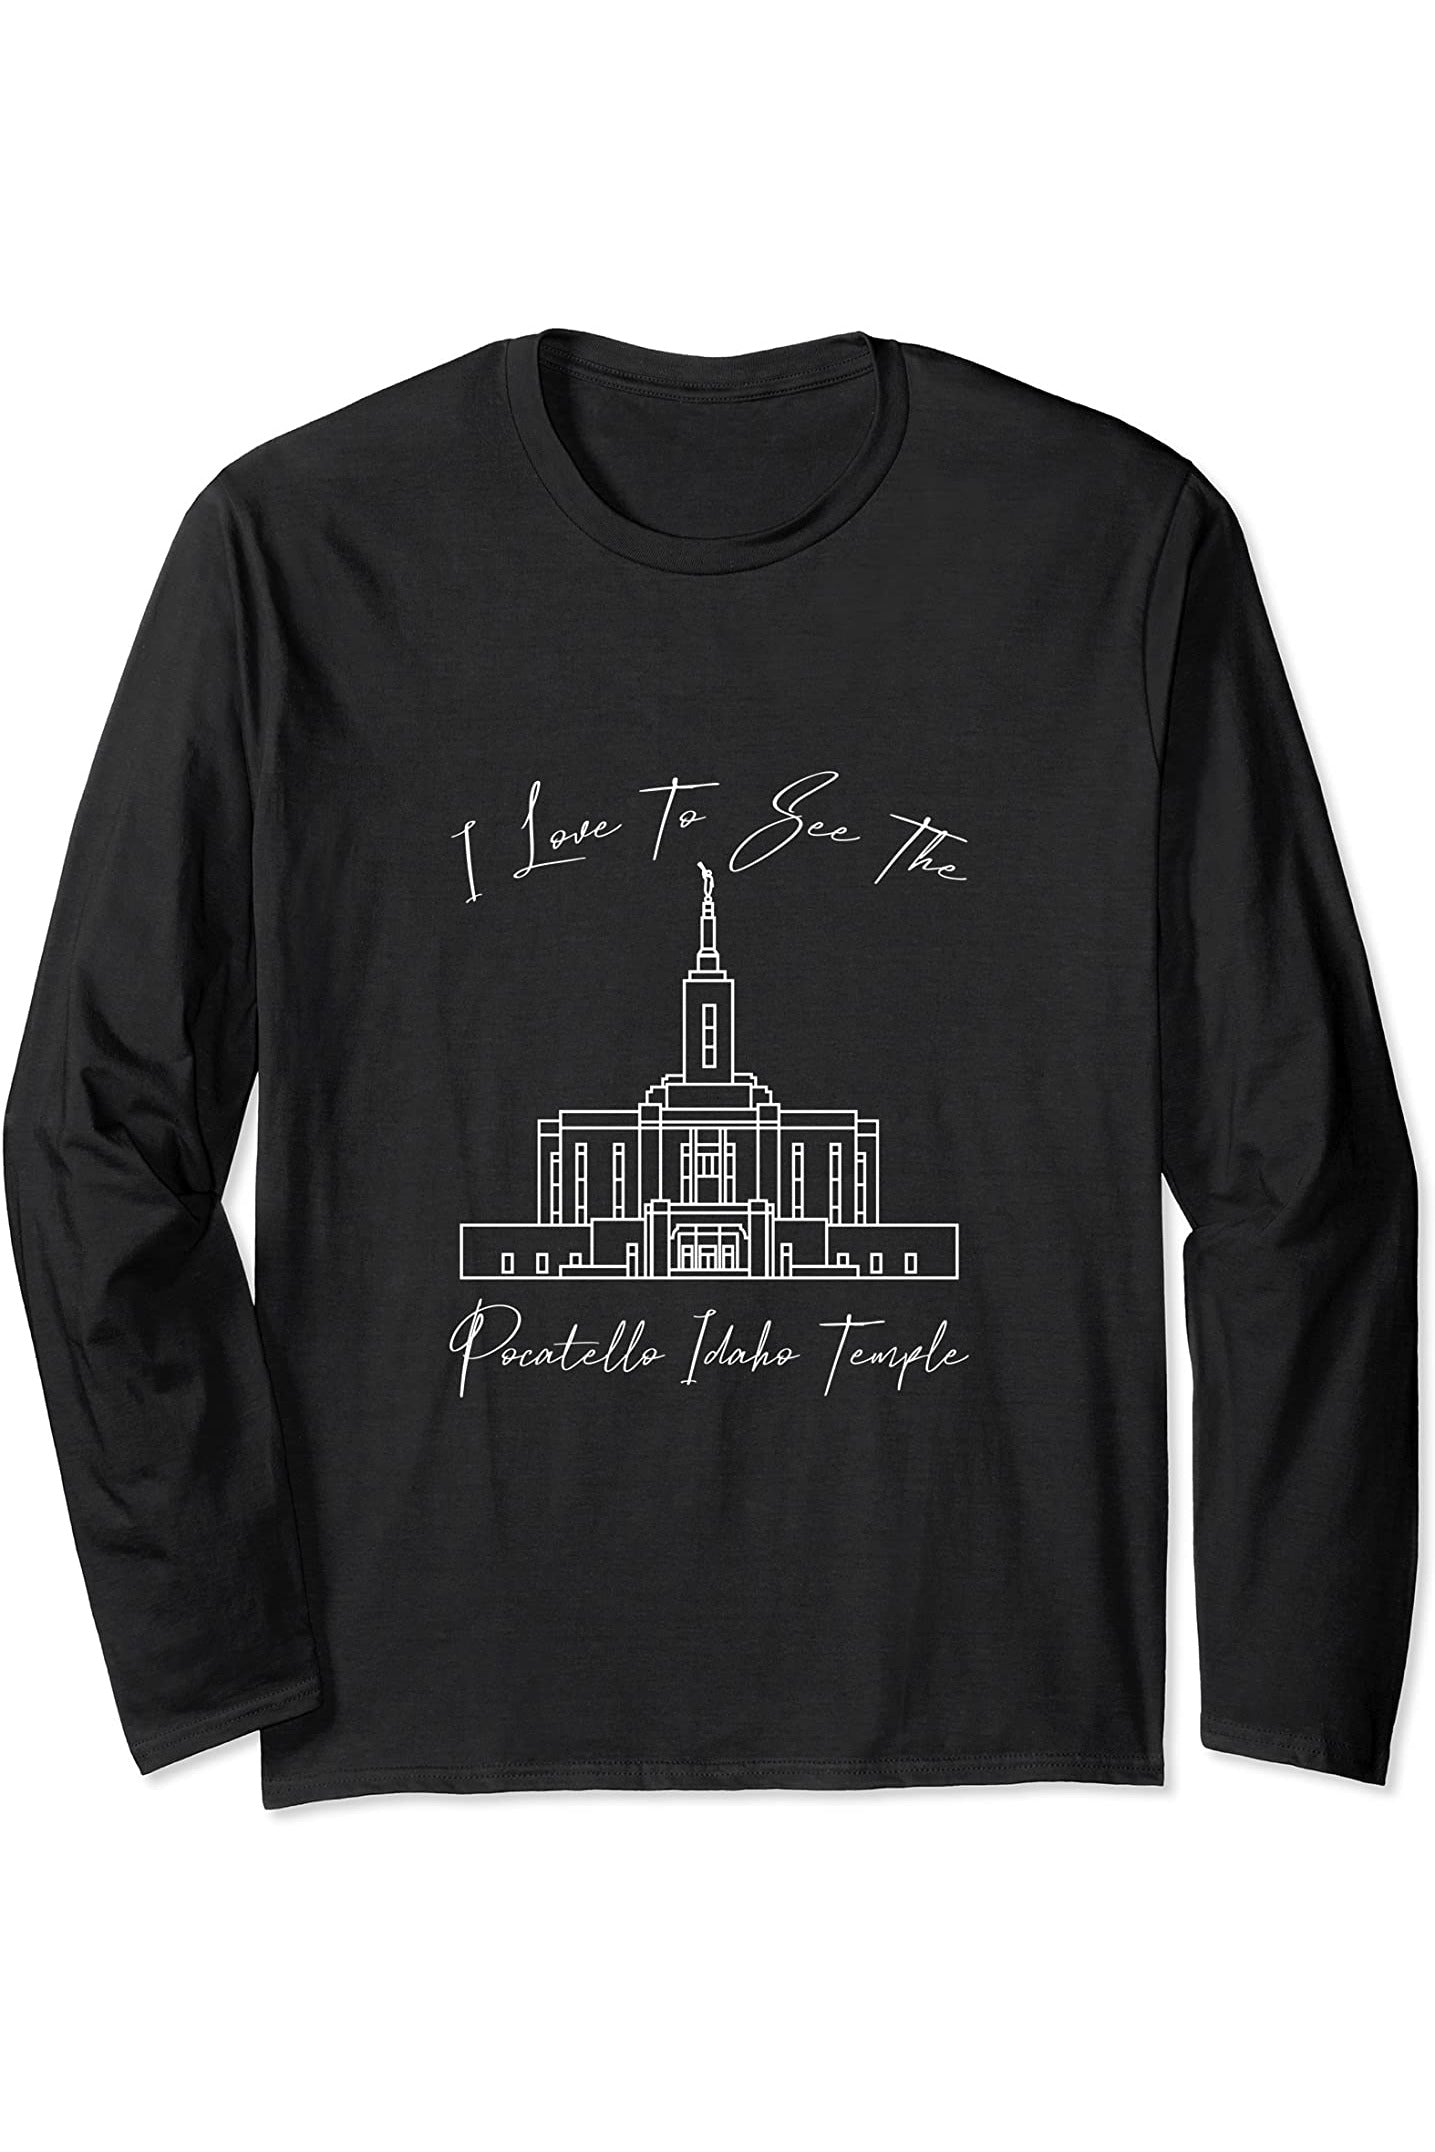 Pocatello Idaho Temple Long Sleeve T-Shirt - Calligraphy Style (English) US